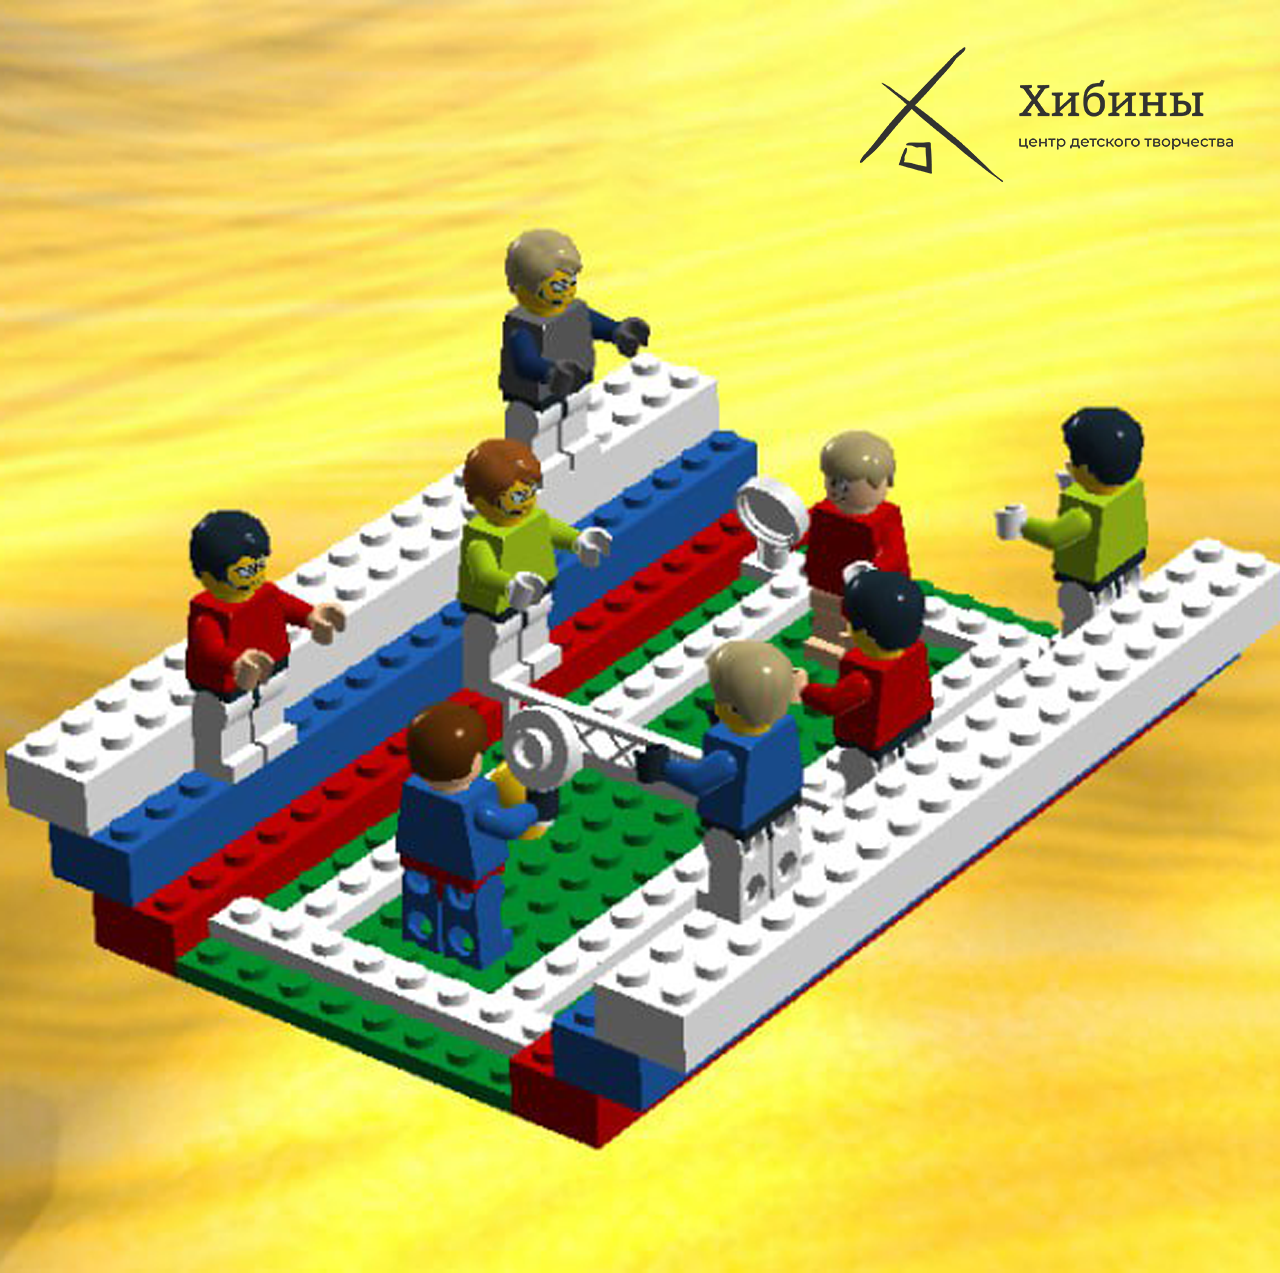 Гайнуллин Константин участвует в областном заочном конкурсе LEGO-проектов